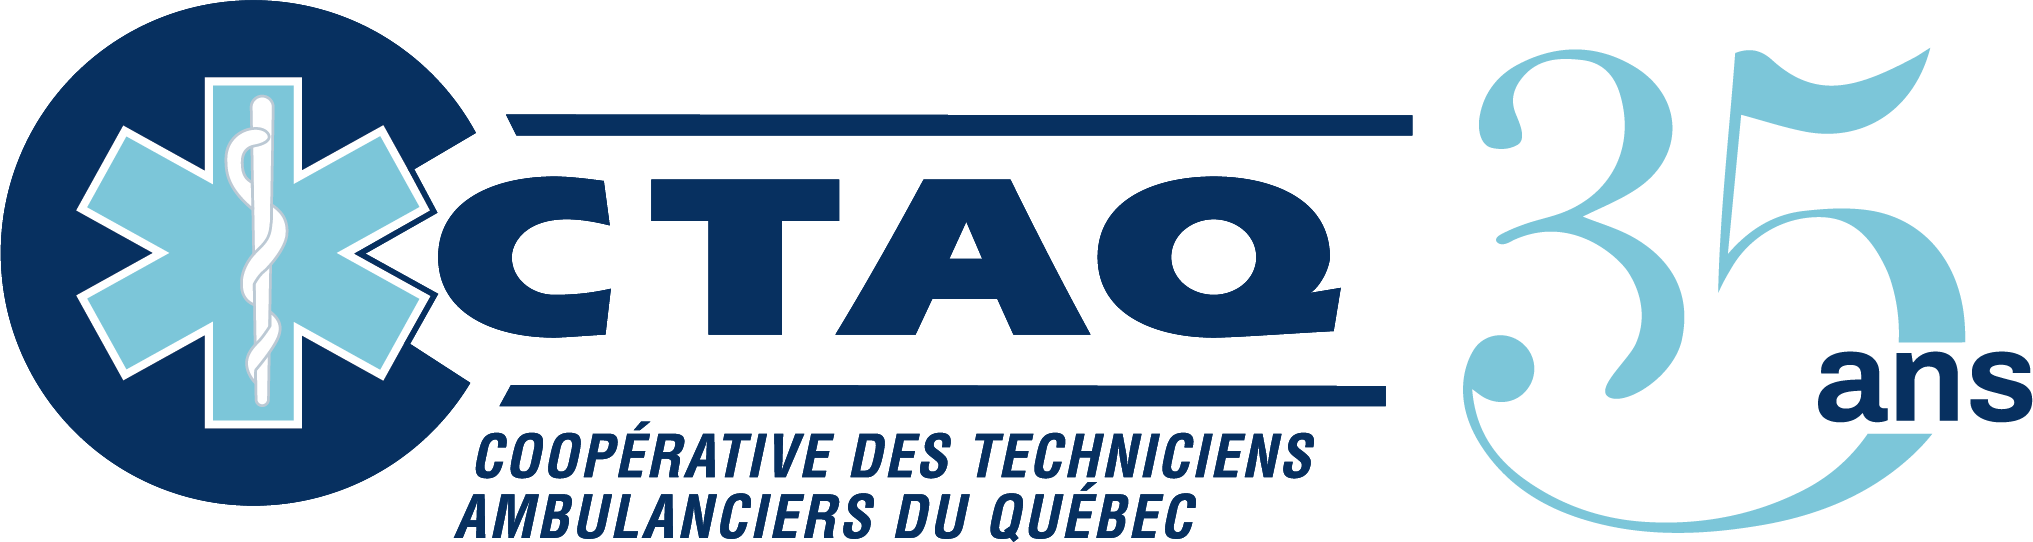 CTAQ : Coopérative des techniciens ambulanciers du Québec